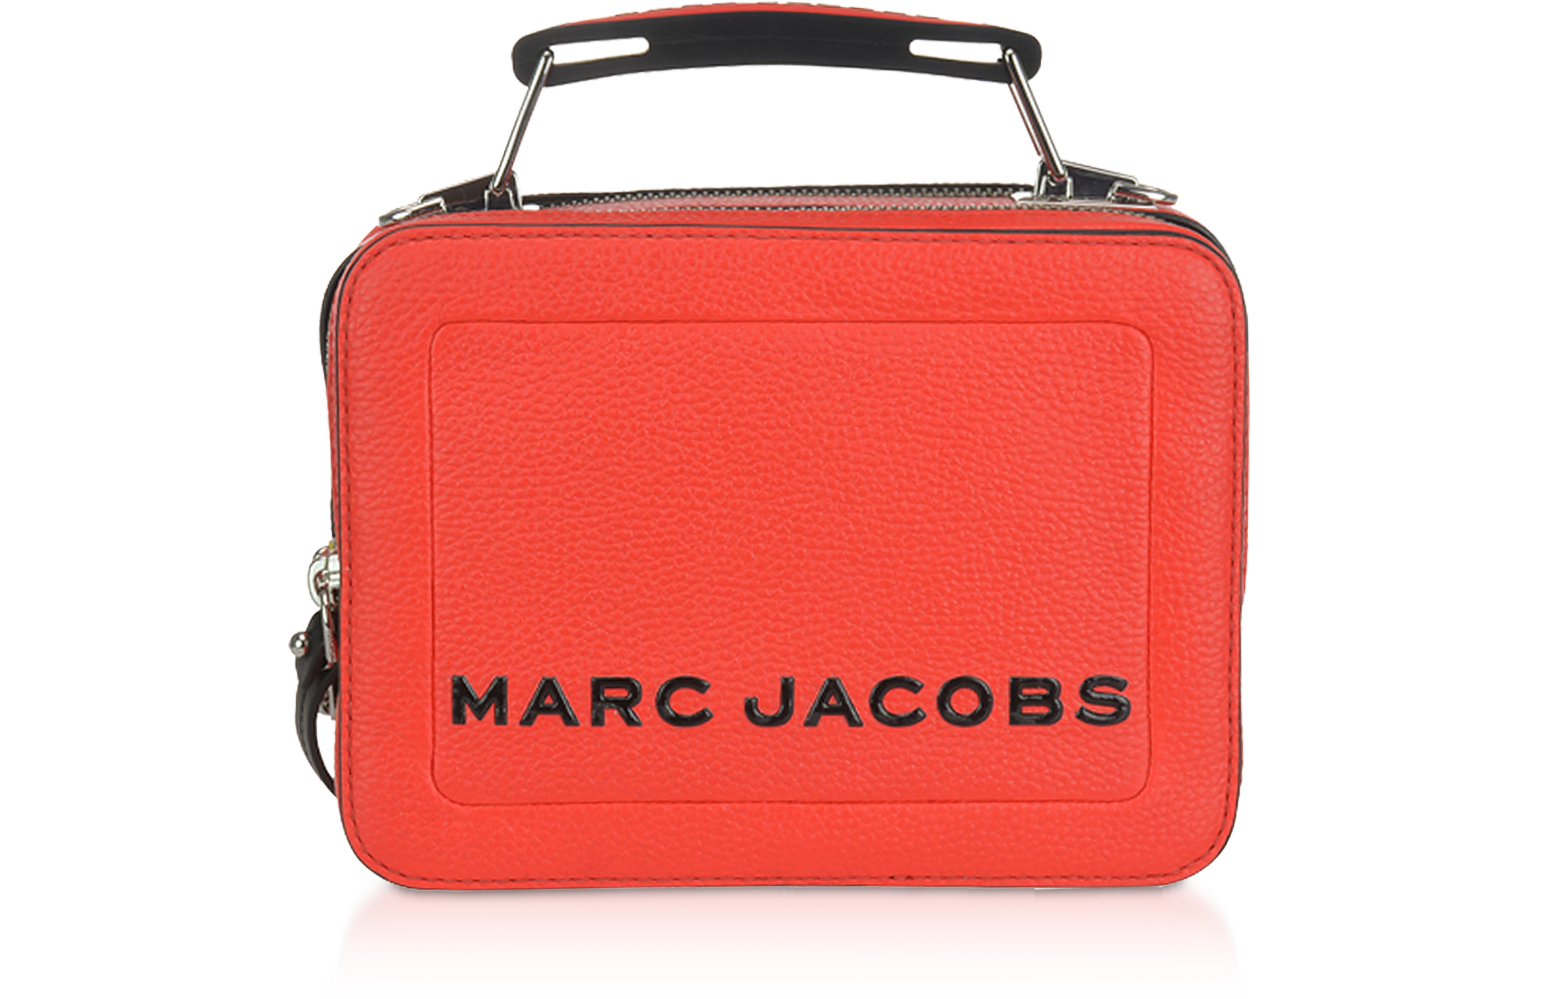 Marc Jacobs Geranium Snapshot DTM Small Camera Bag at FORZIERI